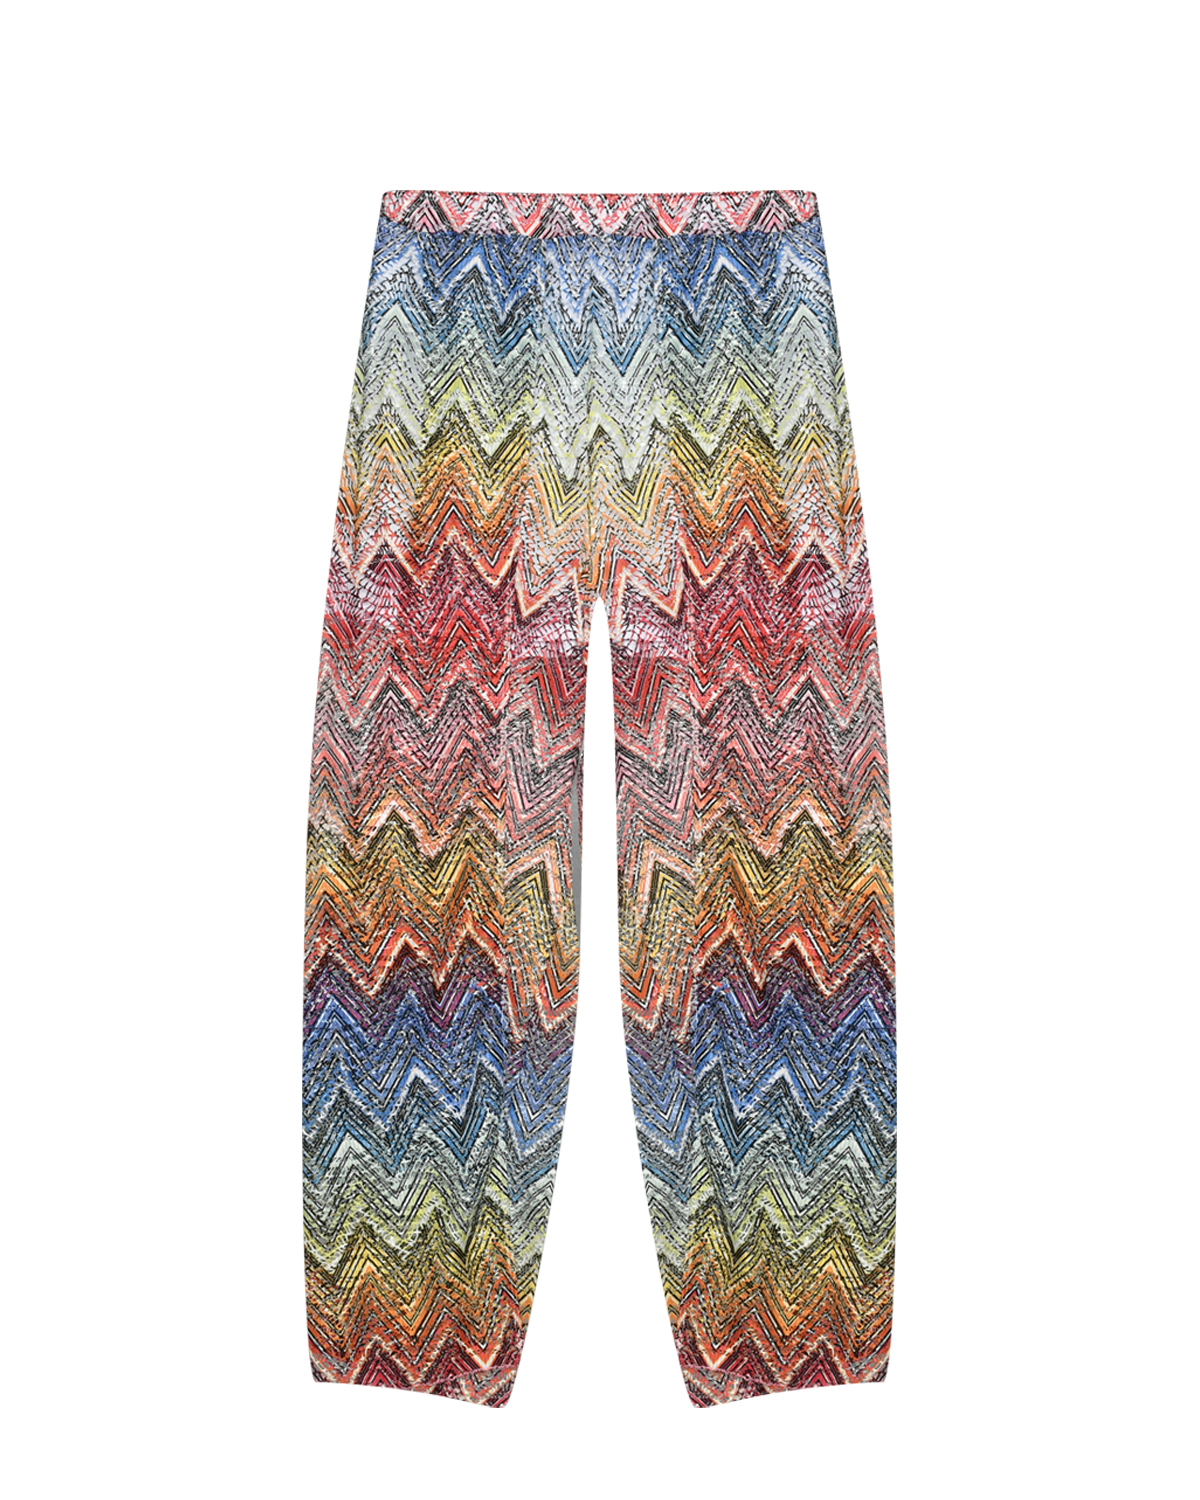 Широкие брюки со сплошным разноцветным принтом Missoni, размер 140